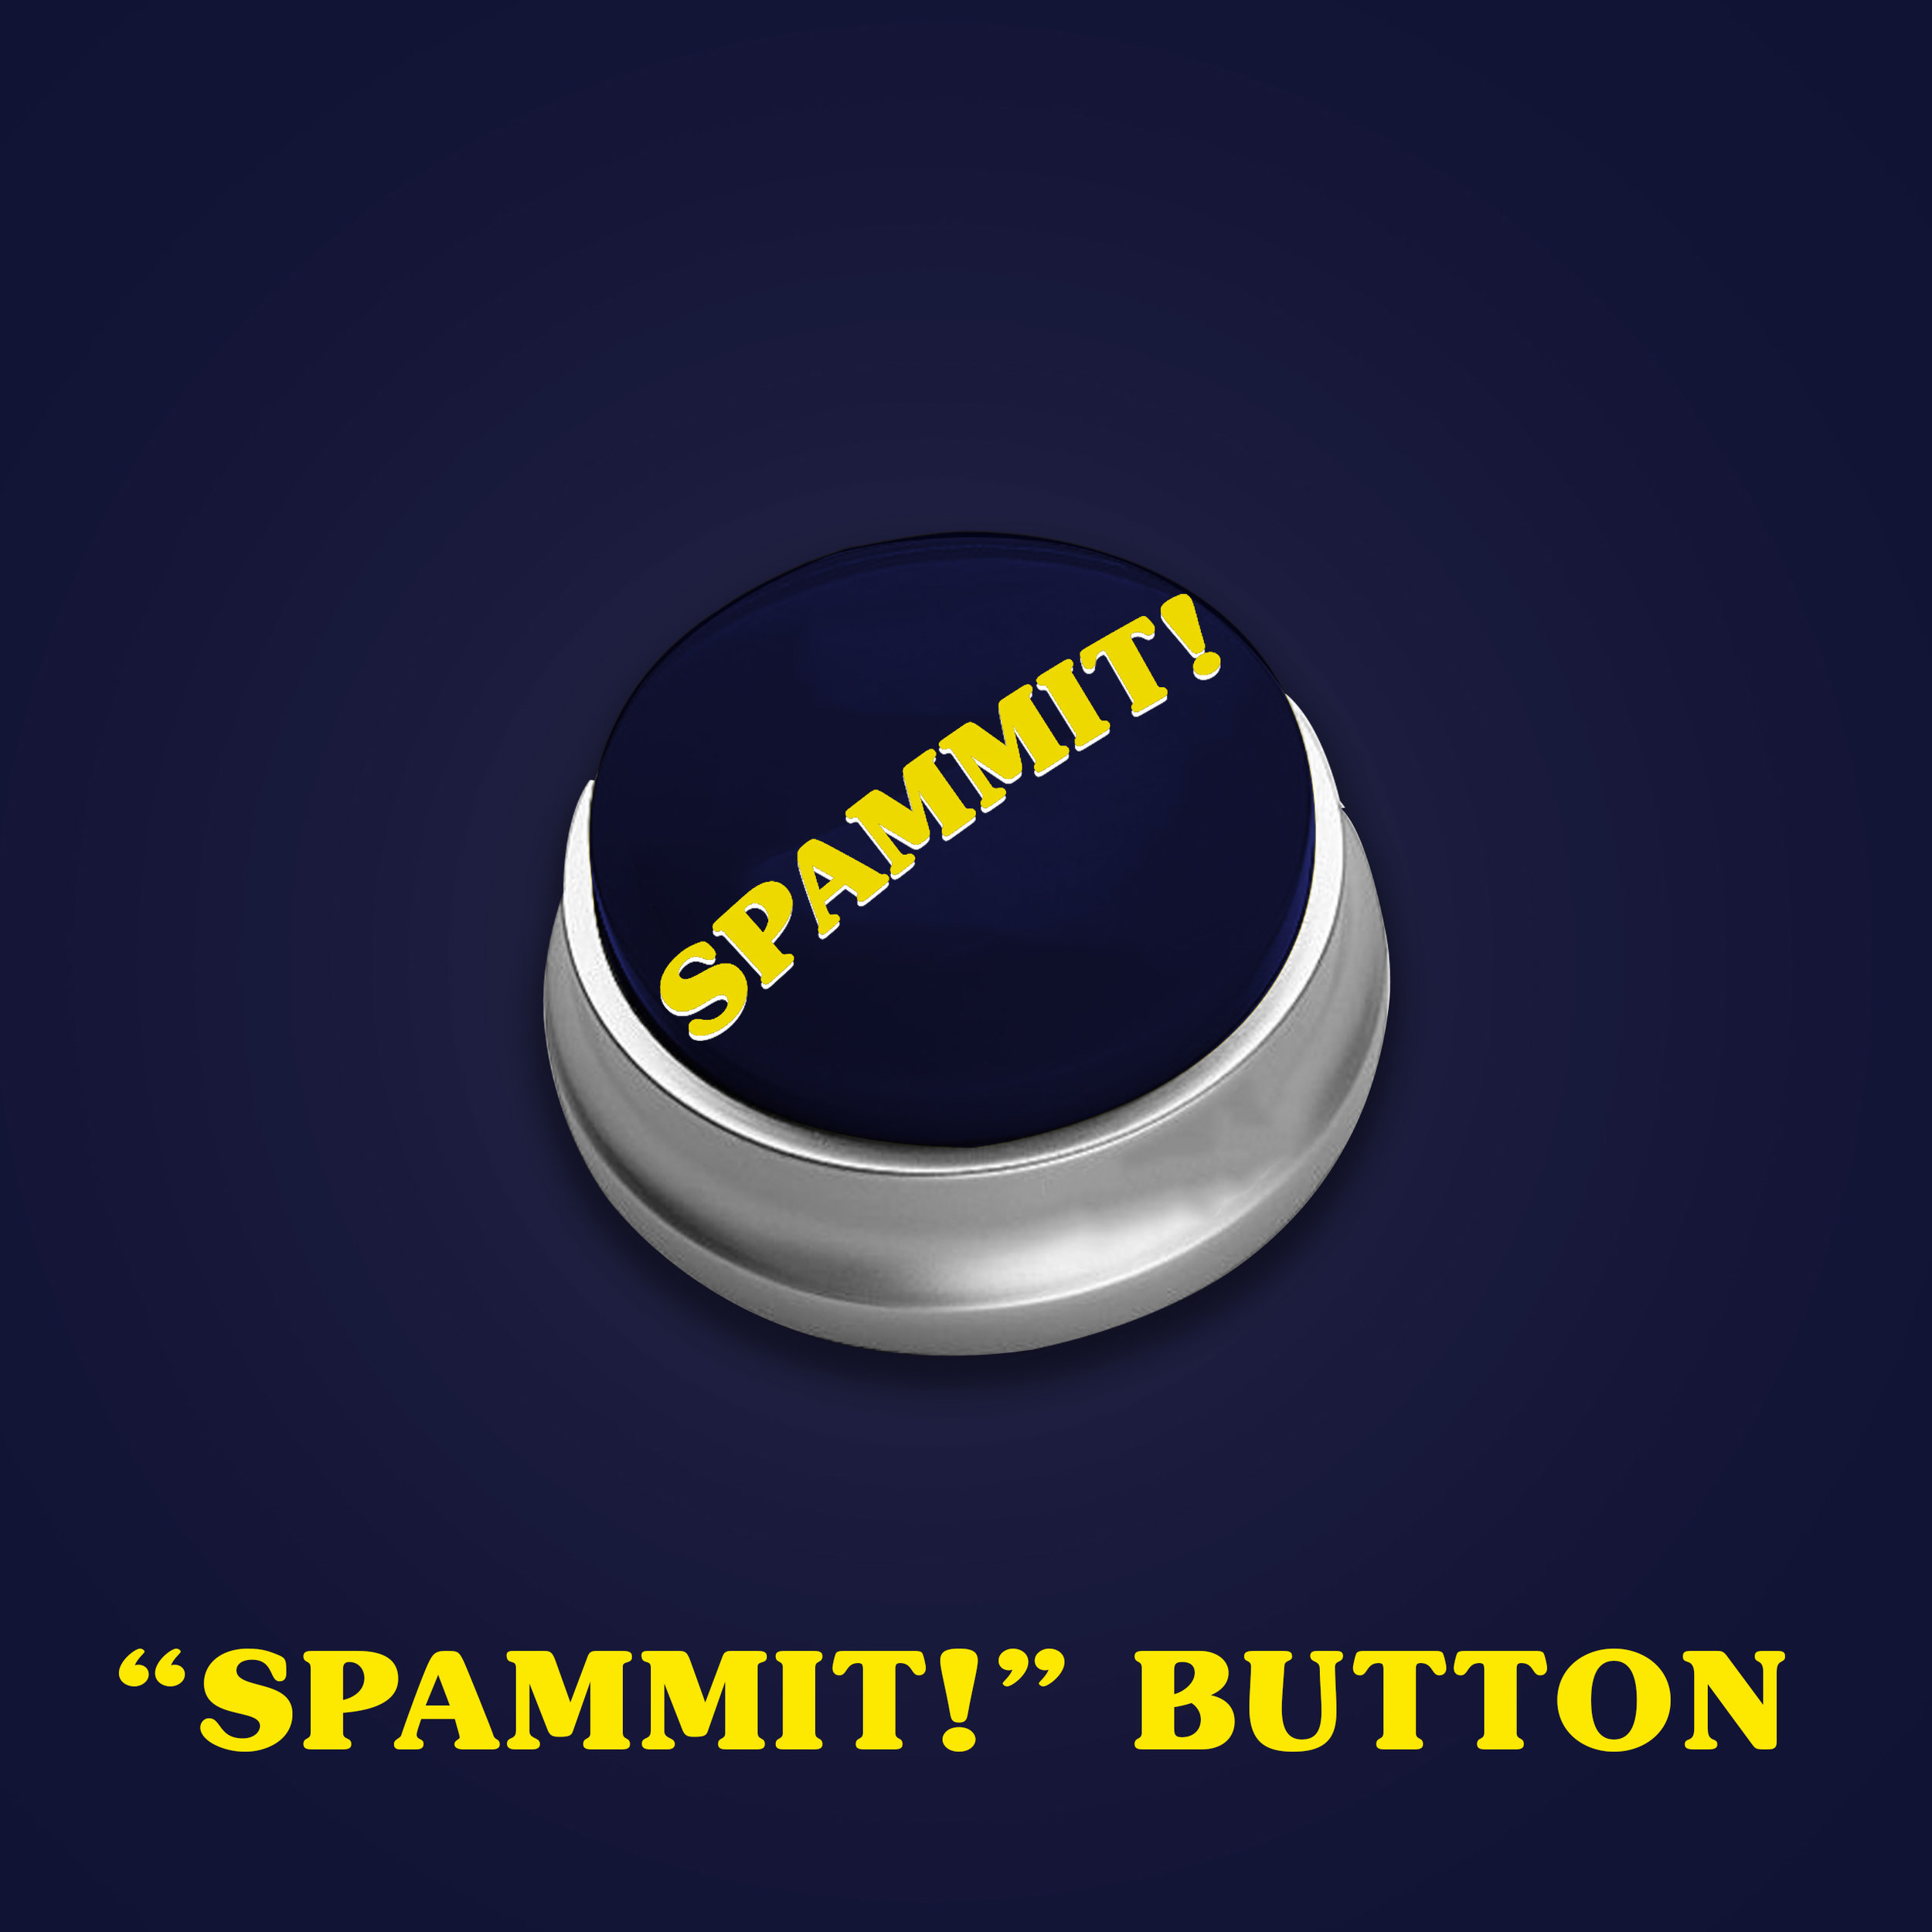 Spam prizes spammit button.jpg